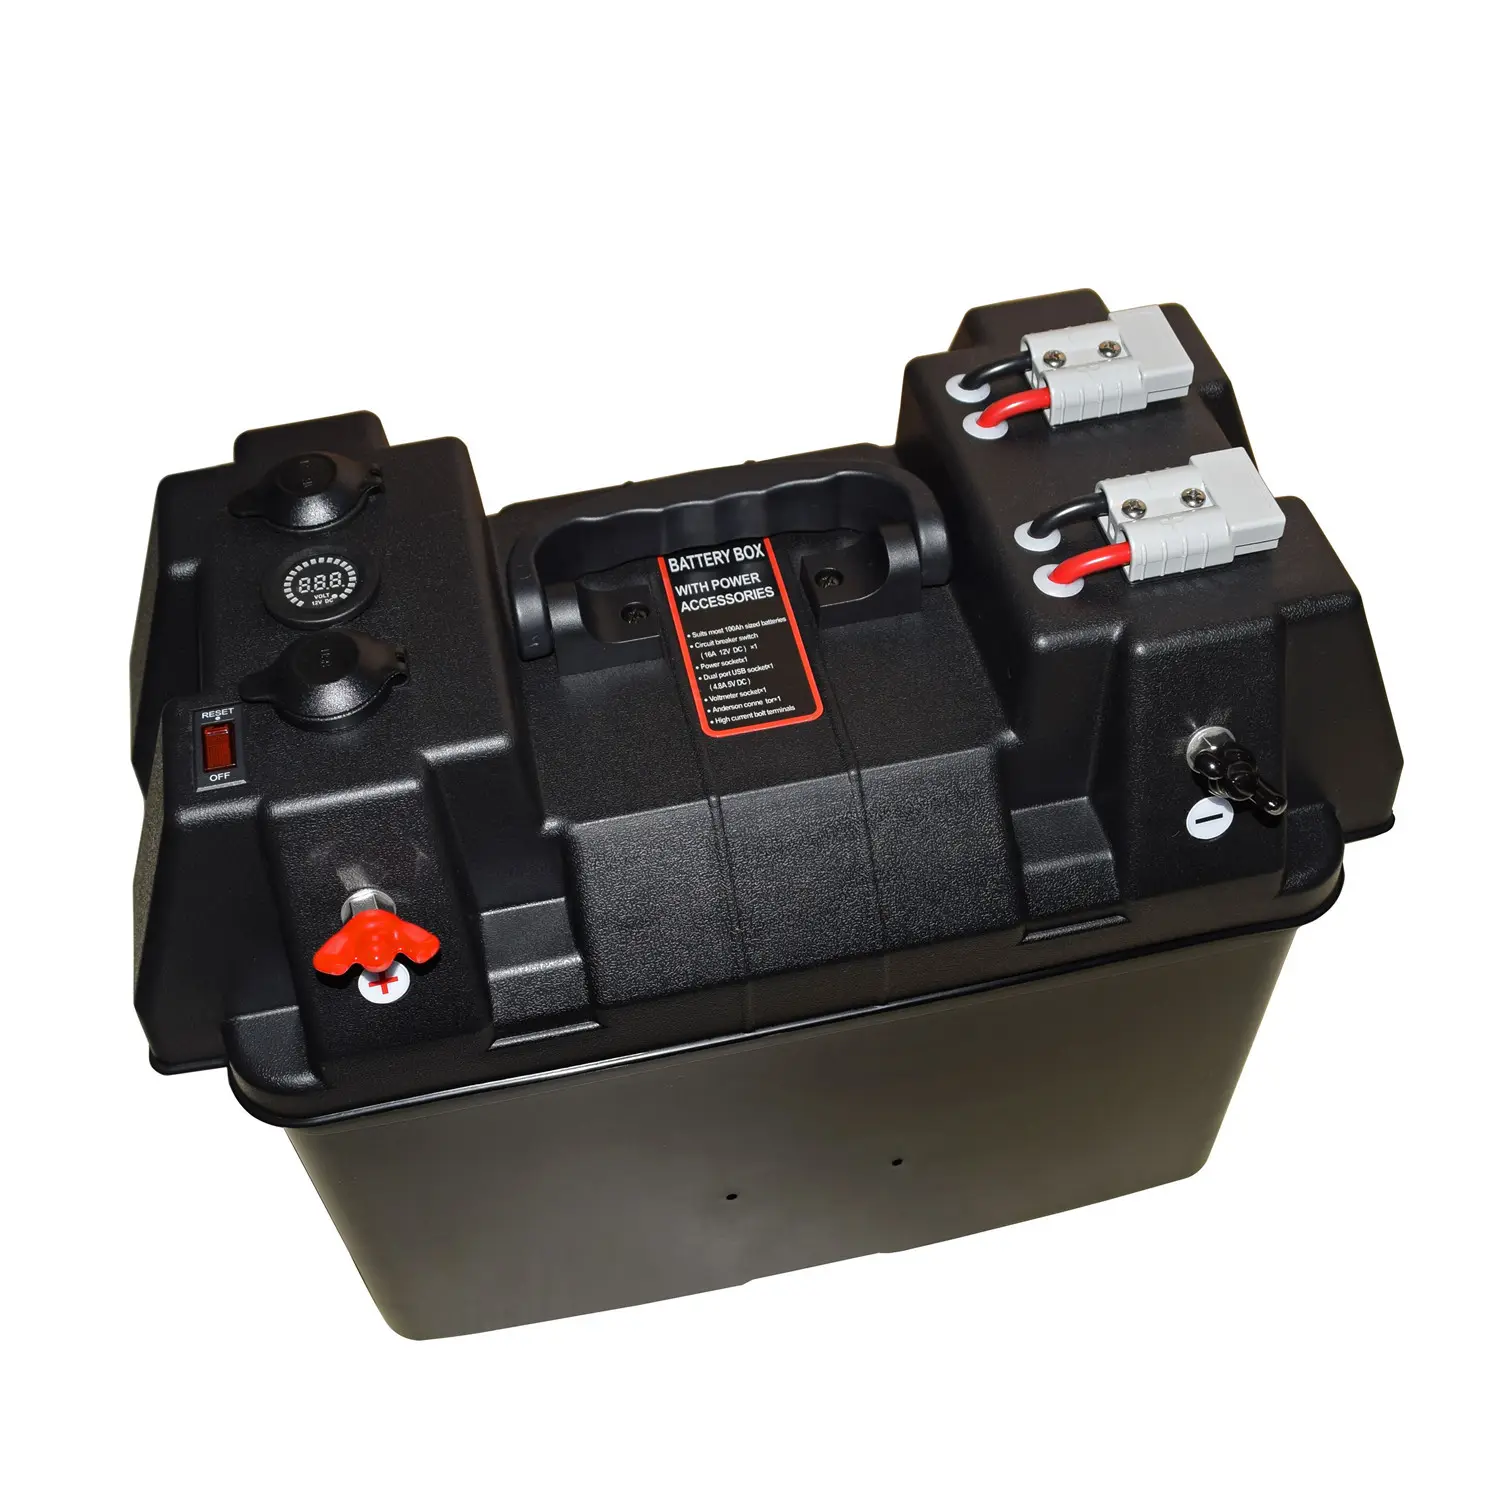 Hersteller Tragbare Batterie box 12V Doppel batteries ystem Batterie box mit Ander-Steckern, Voltmeter, USB und Steckdose für Auto Marine